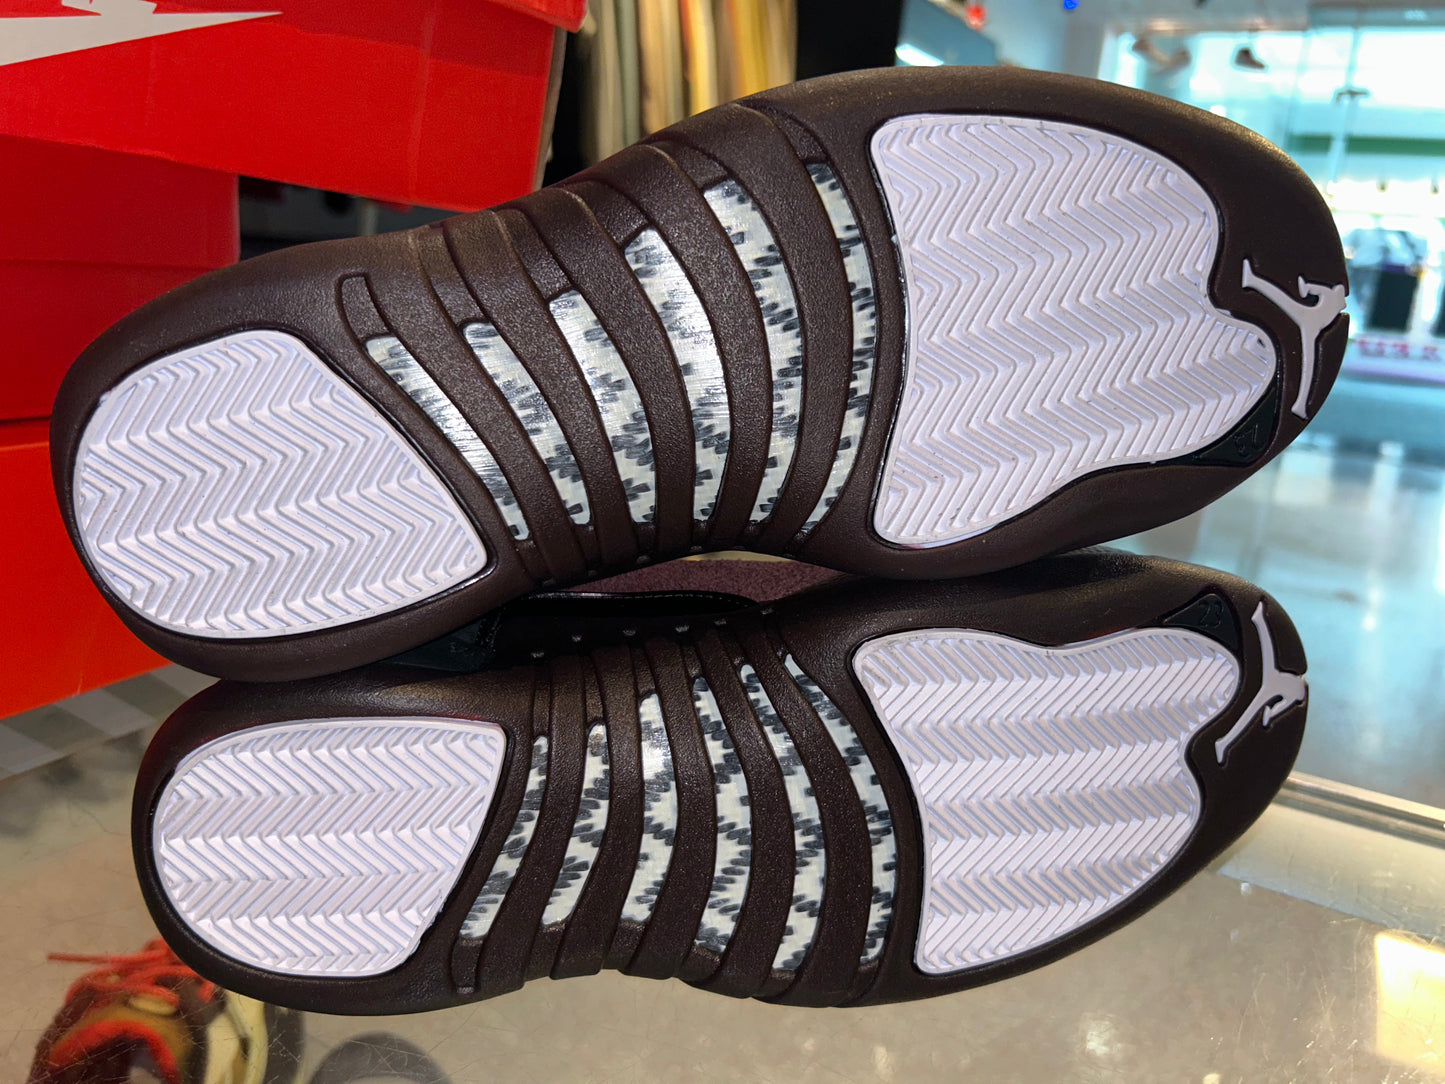 Size 7.5 (9W) Air Jordan 12 “A Ma Maniere Black” Brand New (Mall)